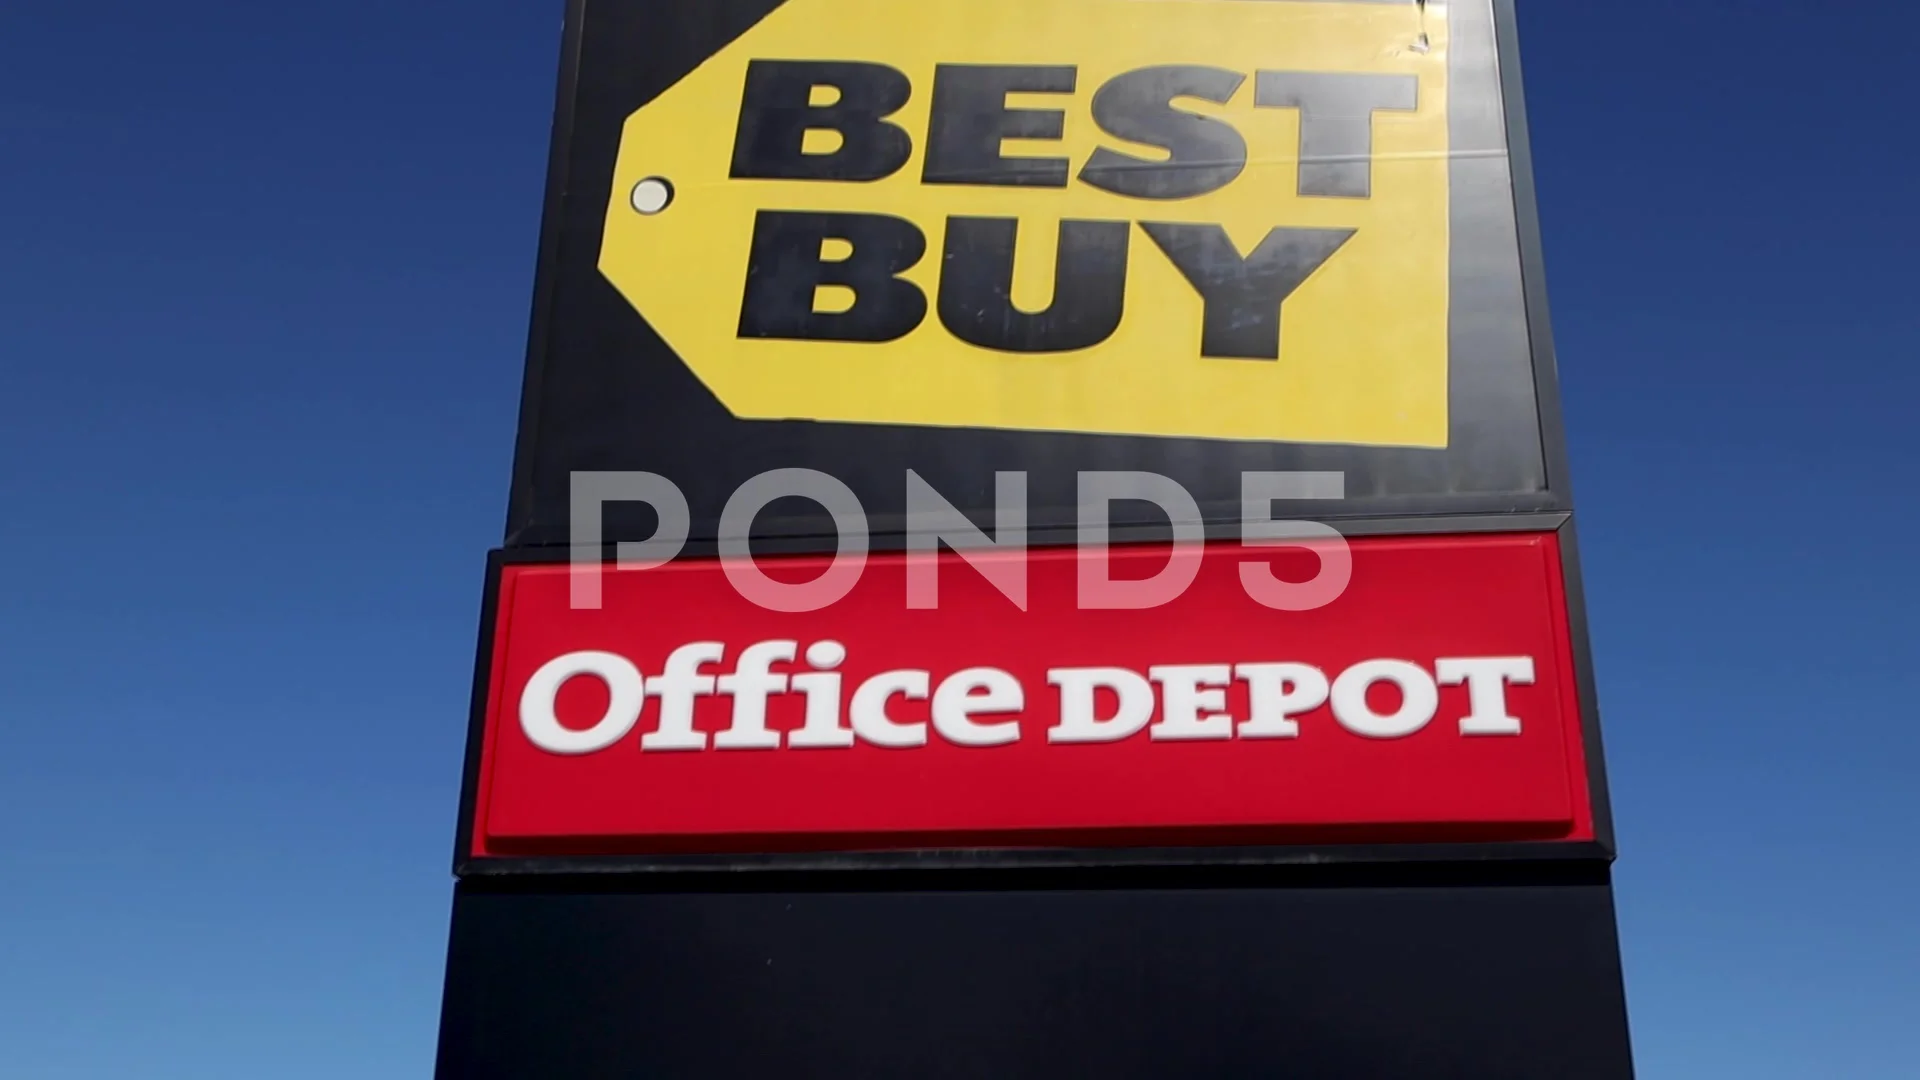 Top 59+ imagen office depot vs best buy